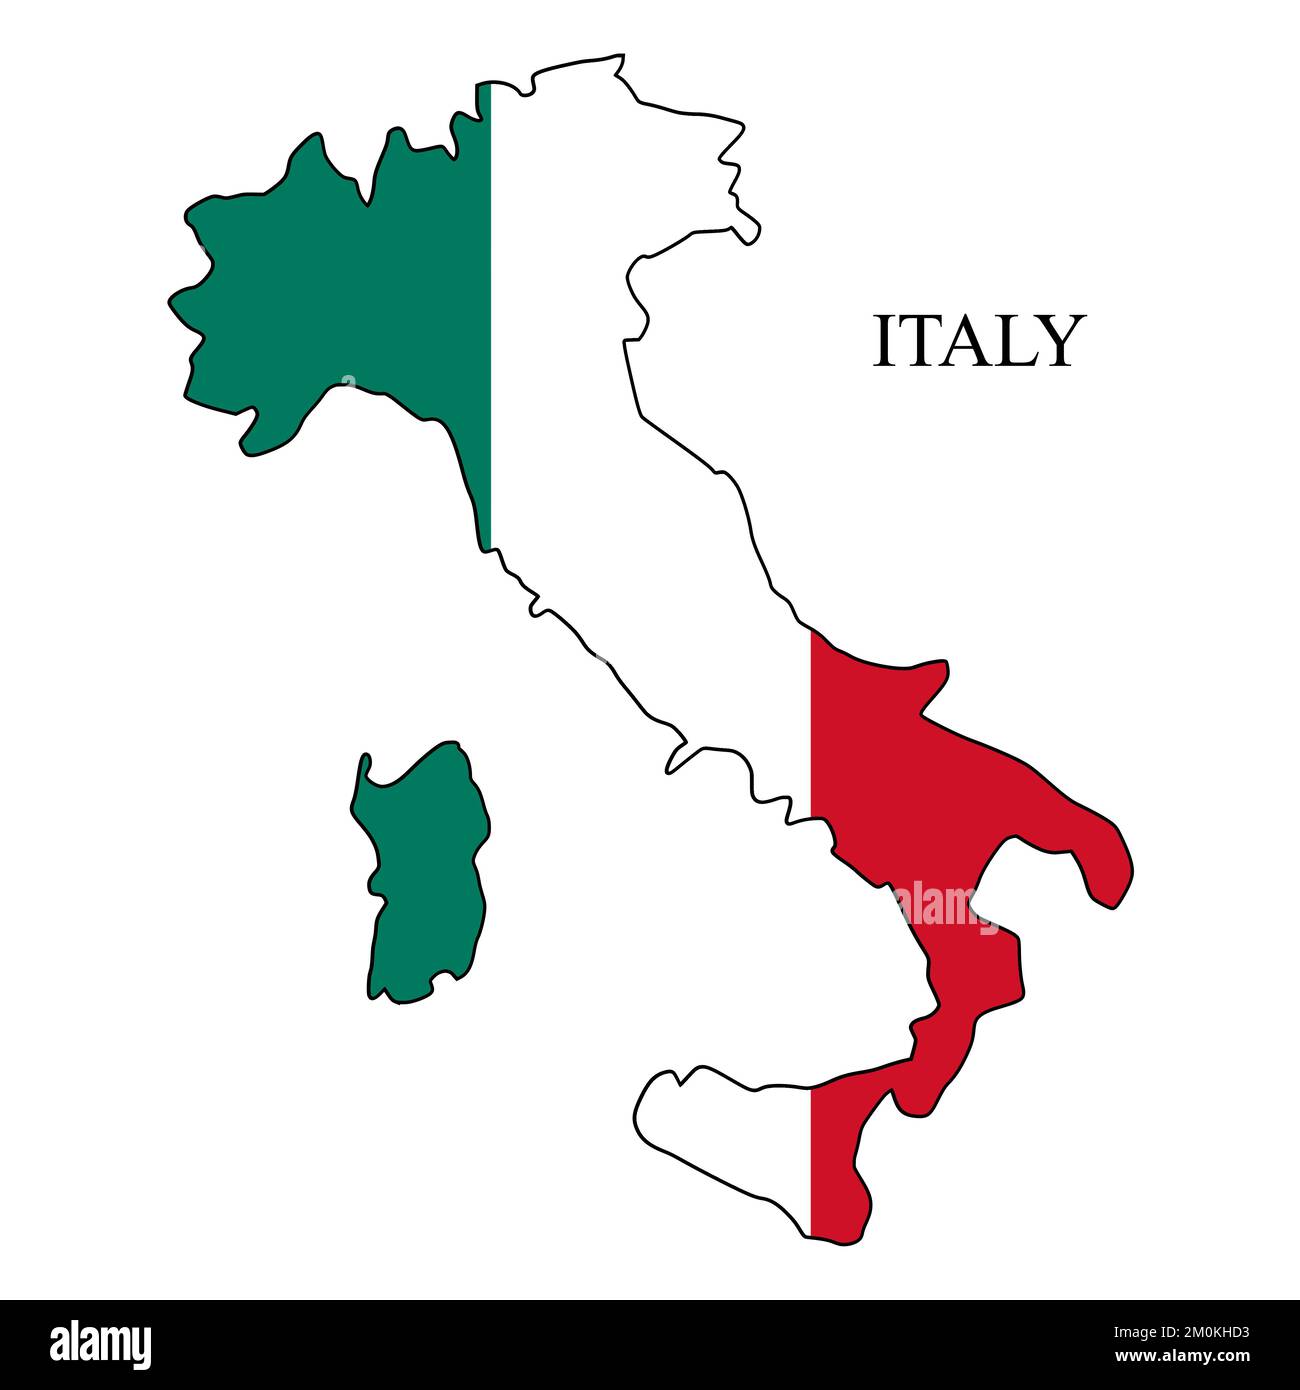 Illustration vectorielle de la carte de l'Italie. Économie mondiale. Pays célèbre. Europe du Sud. Europe. Illustration de Vecteur